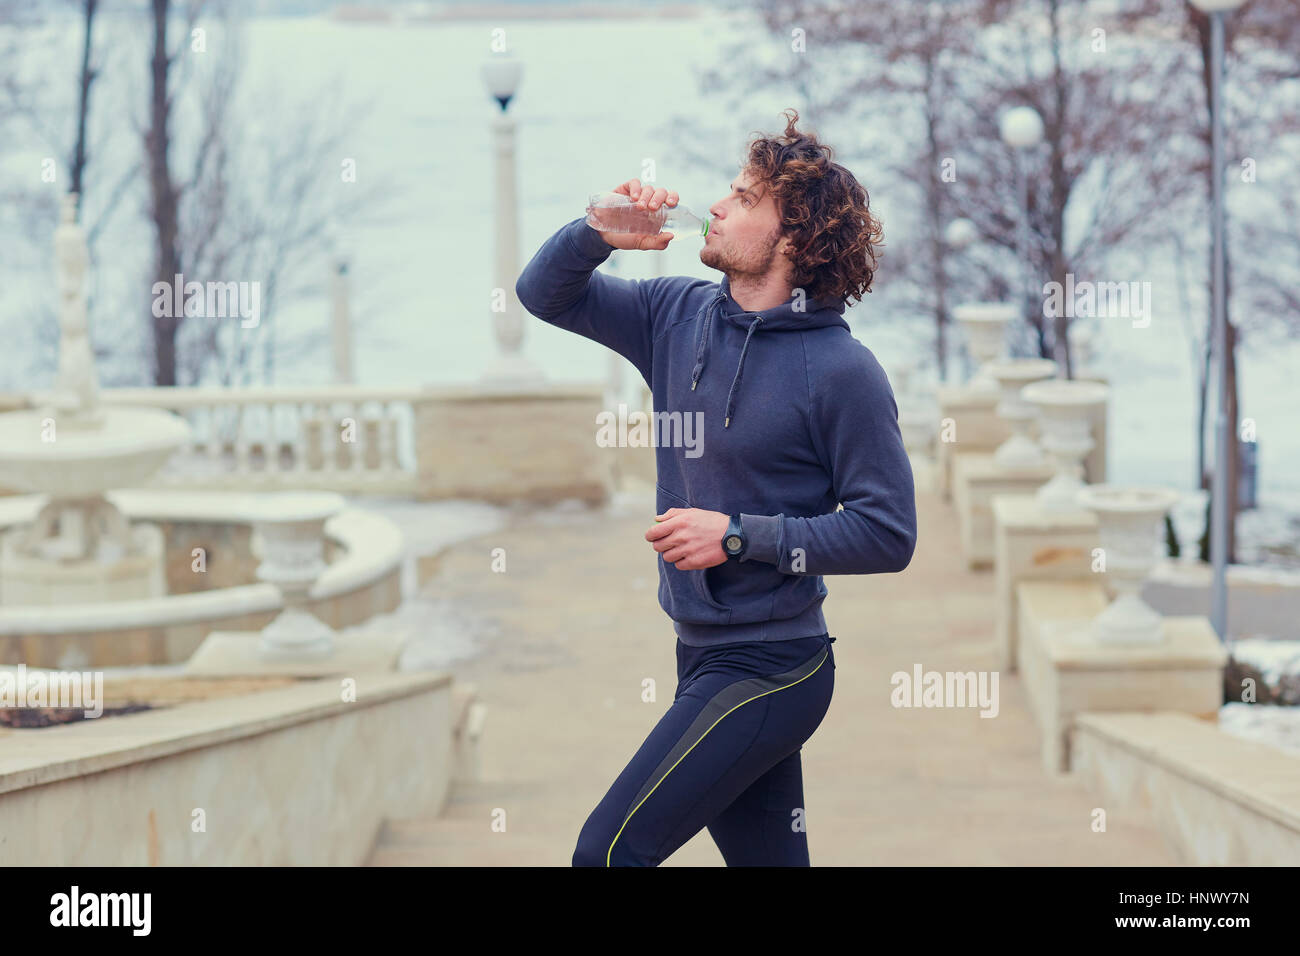 Ricci runner maschio beve l'acqua da una bottiglia in posizione di parcheggio sul stai Foto Stock